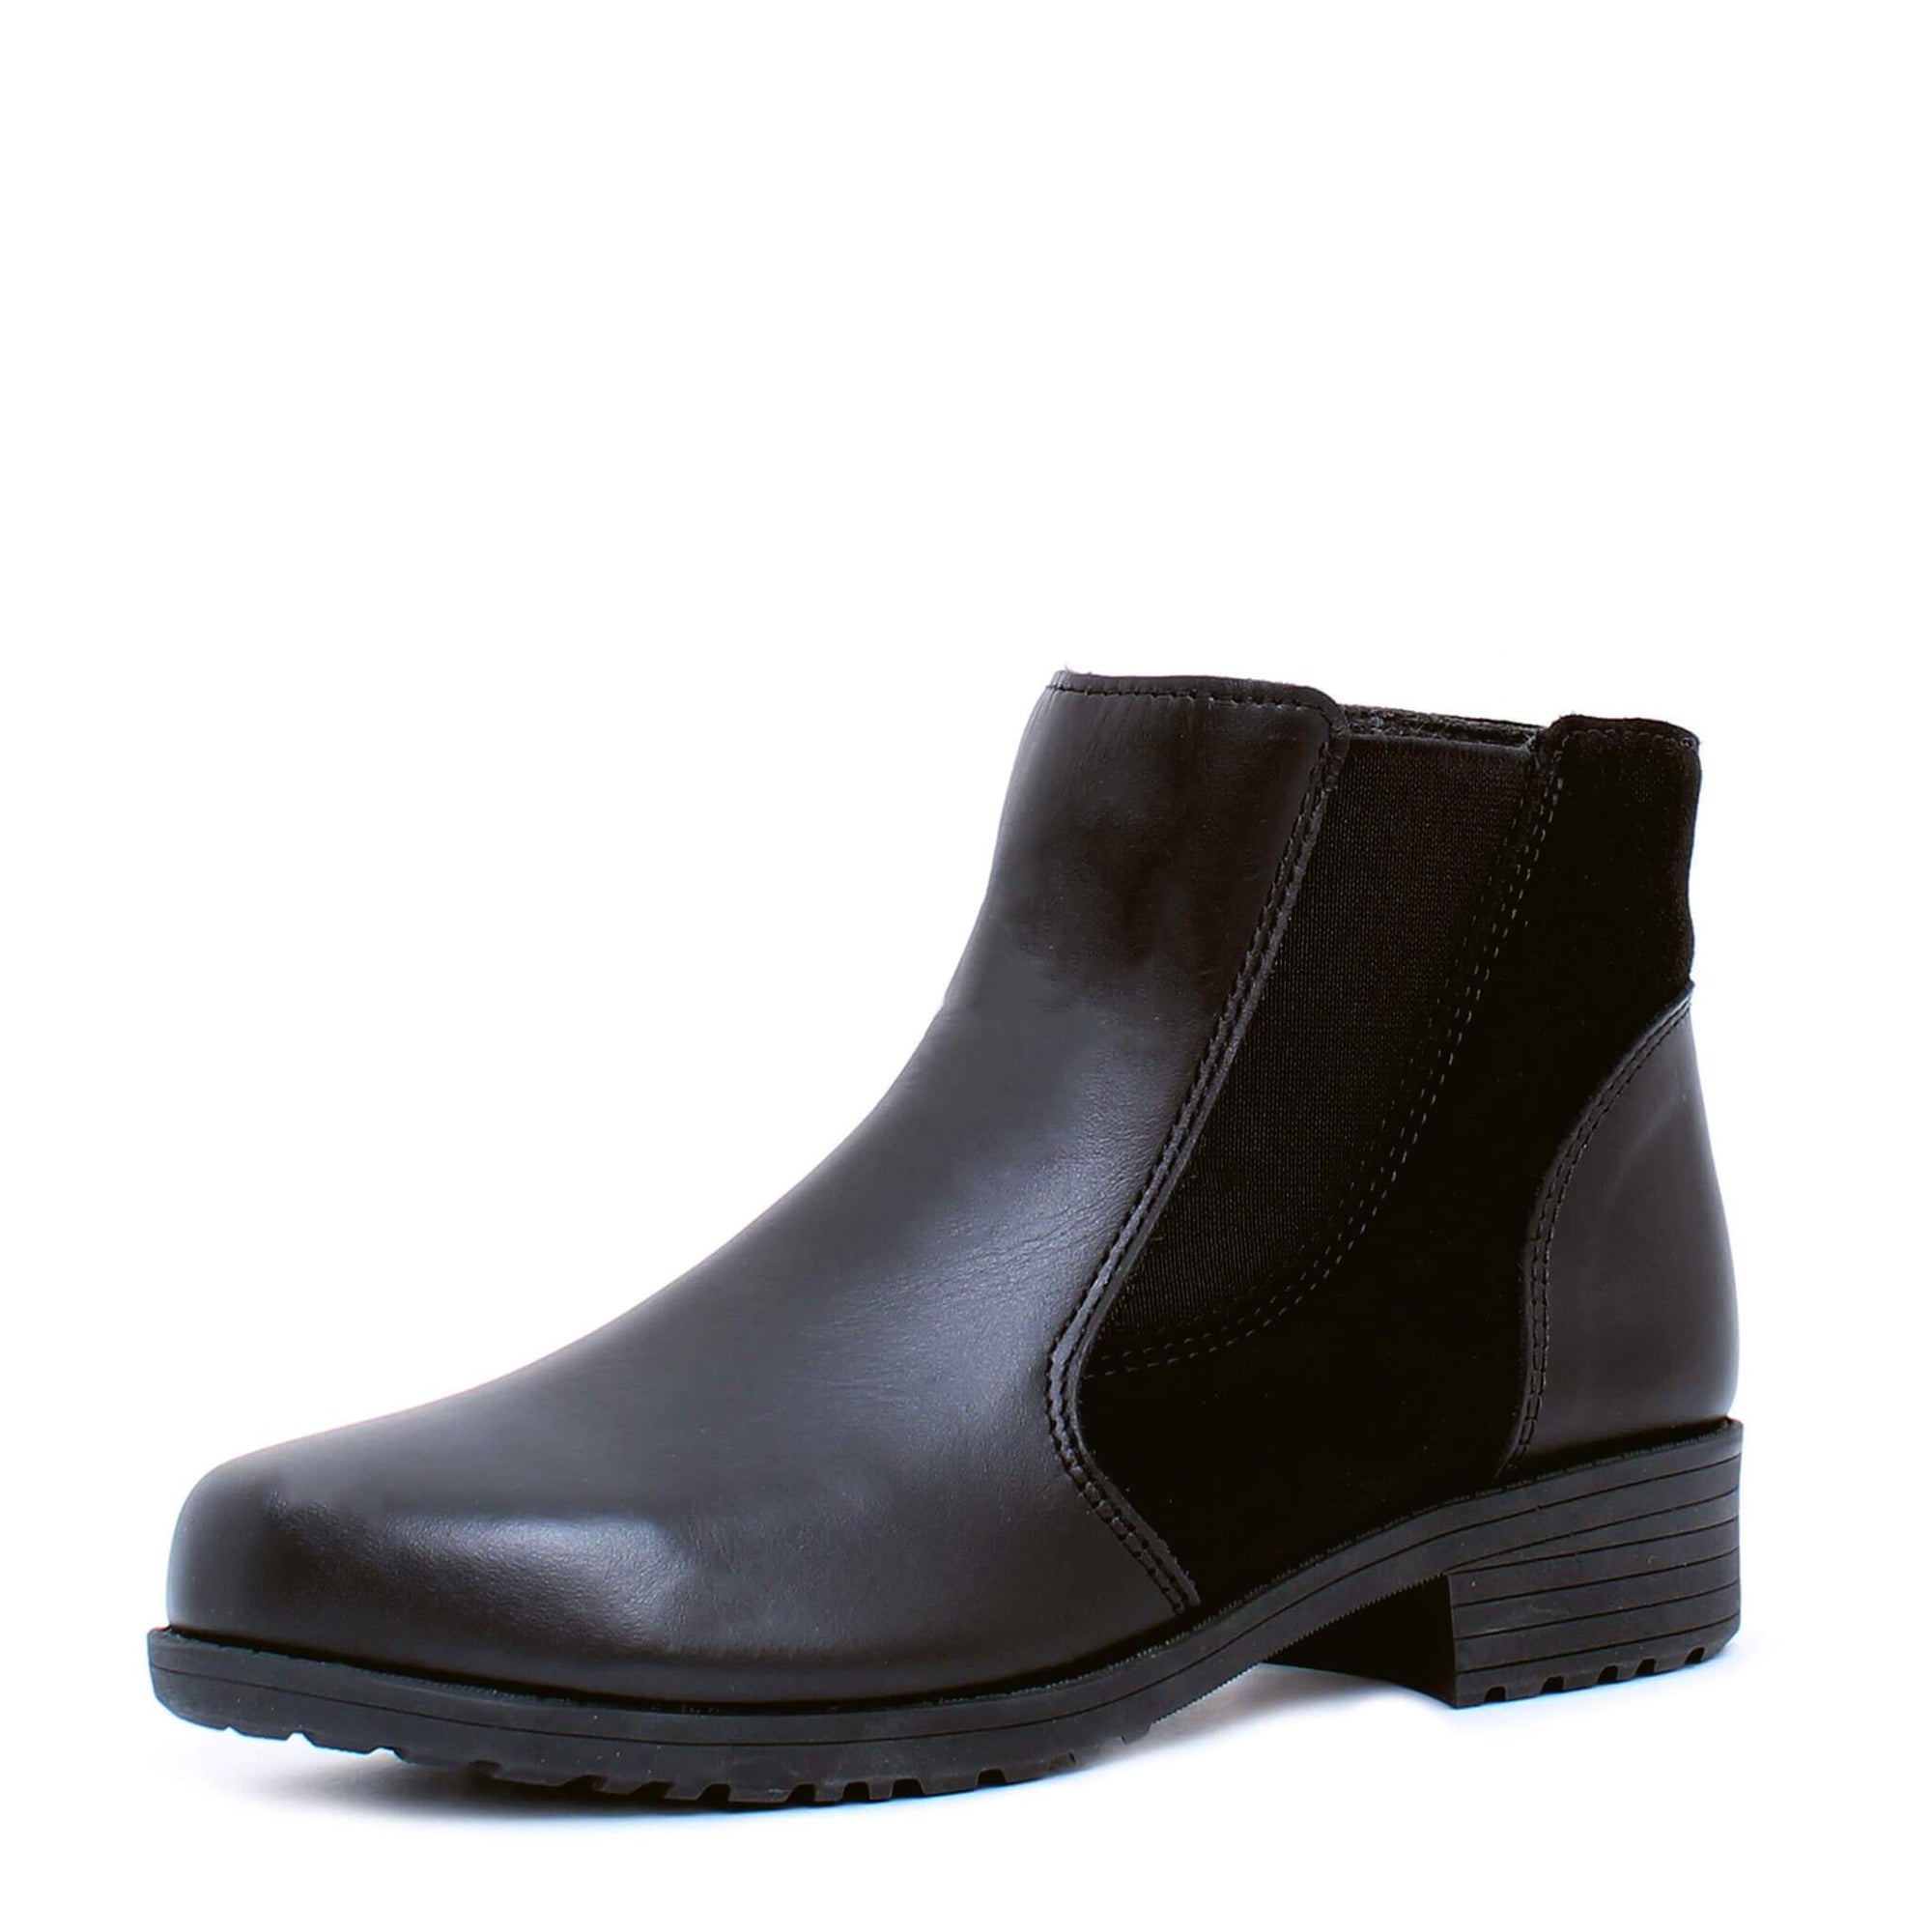 Misty winter boot for women - Black 